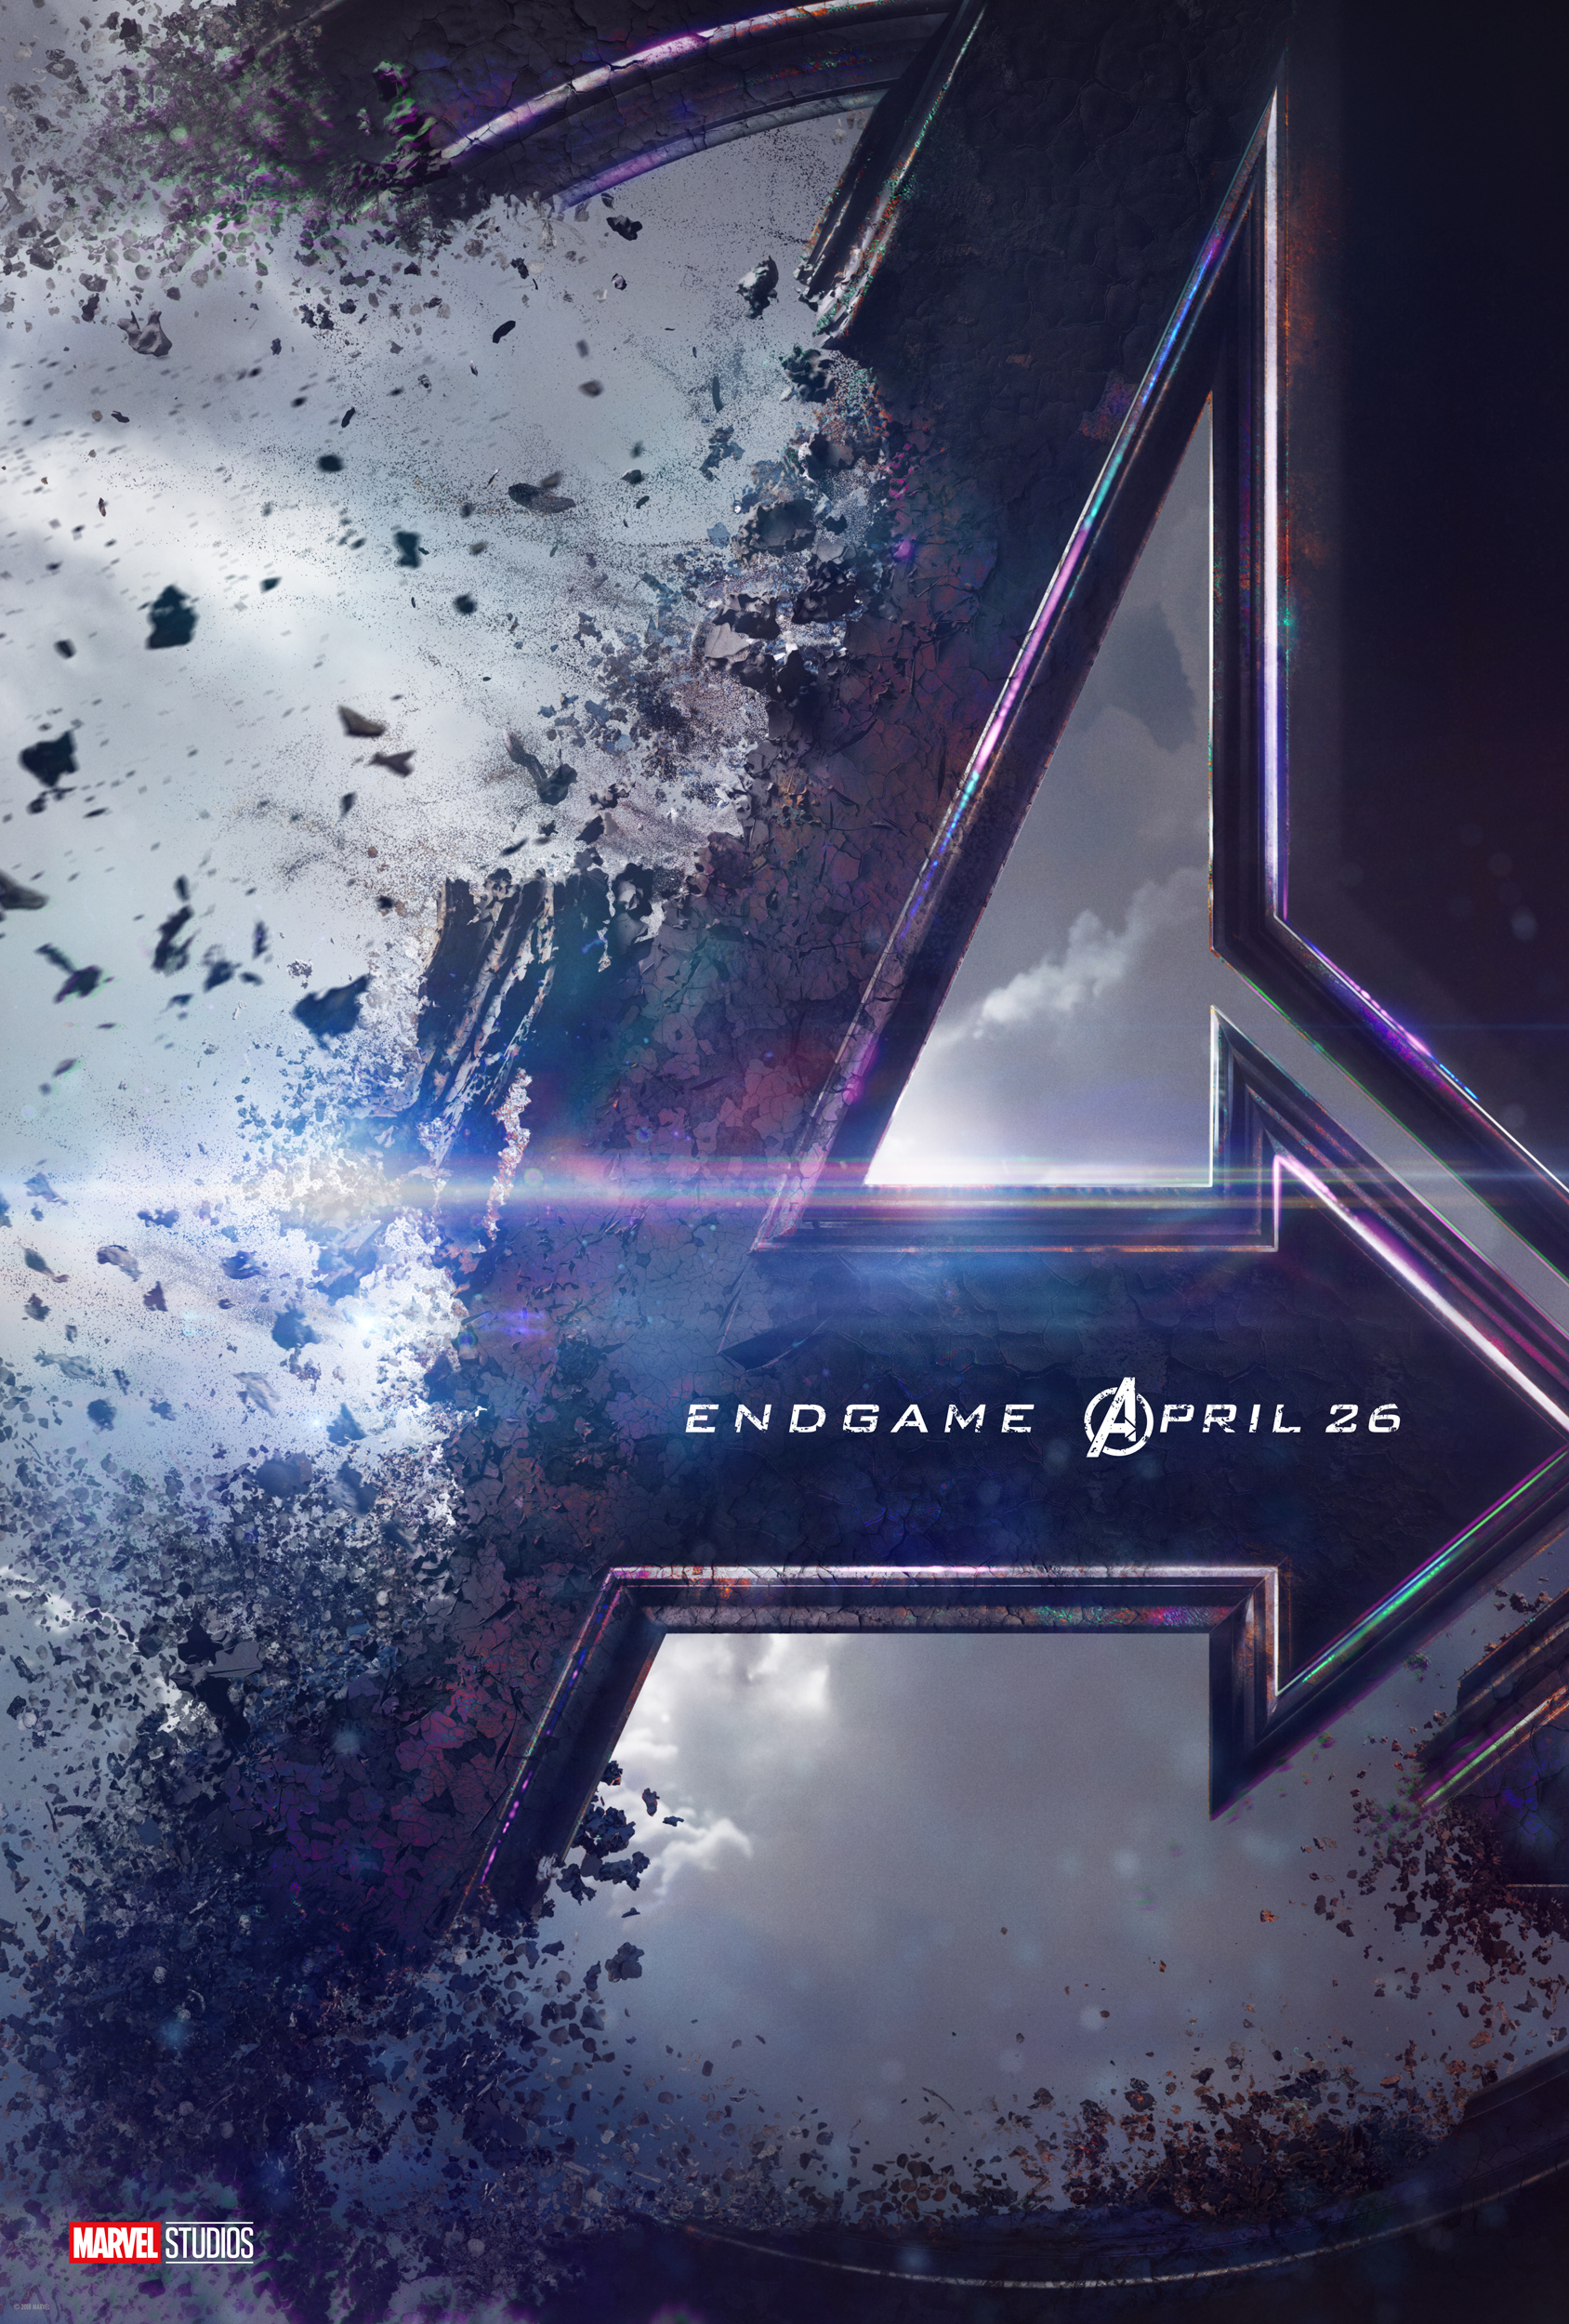 Marvel Studios Releases First Trailer for Avengers: Endgame